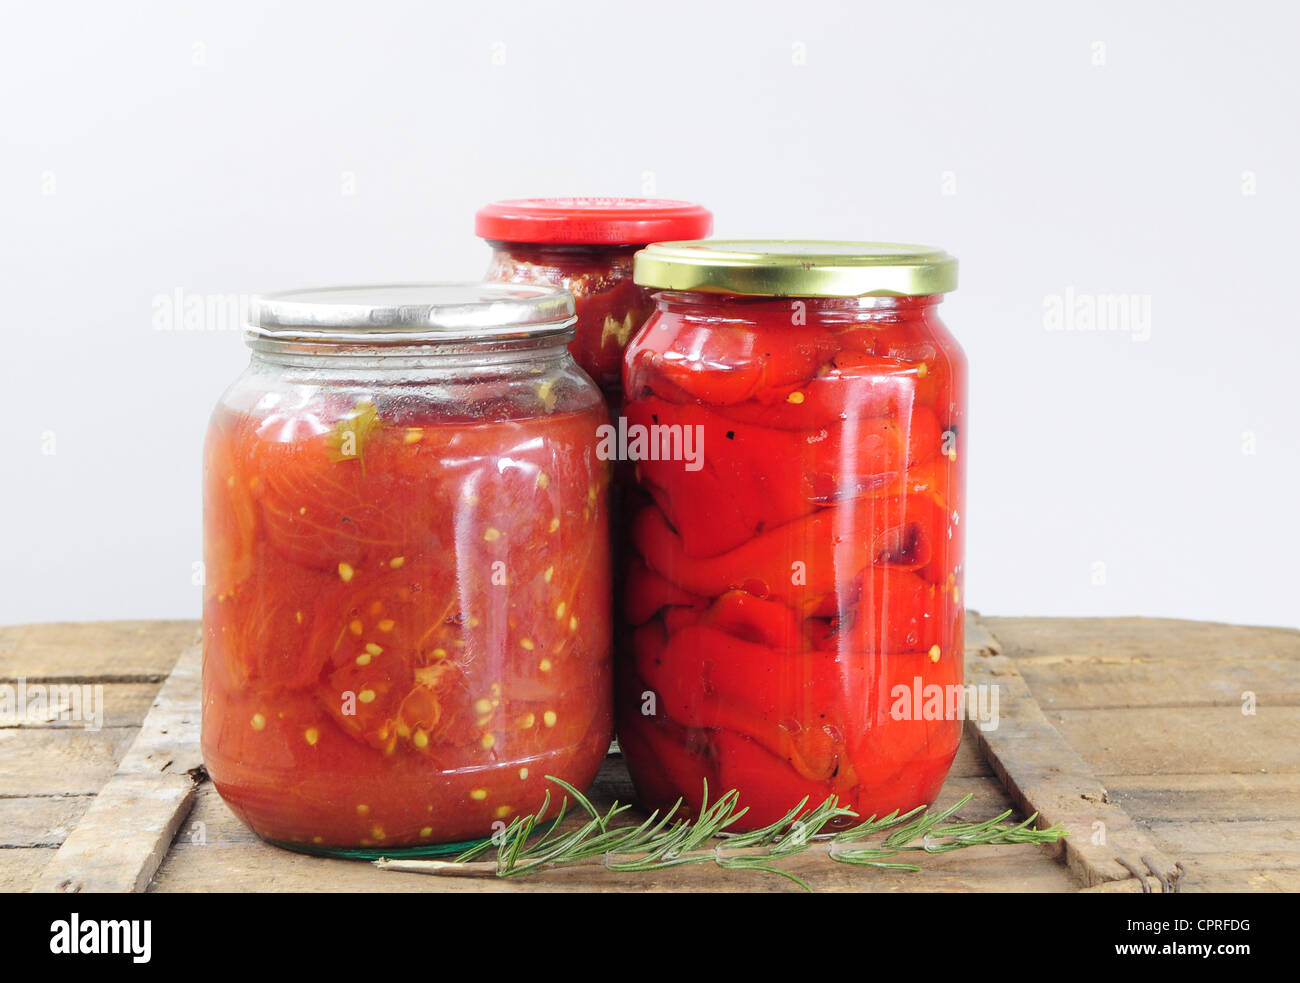 Konservierung von Lebensmitteln. Gläser mit konservierten Tomaten und Paprika Stockfoto